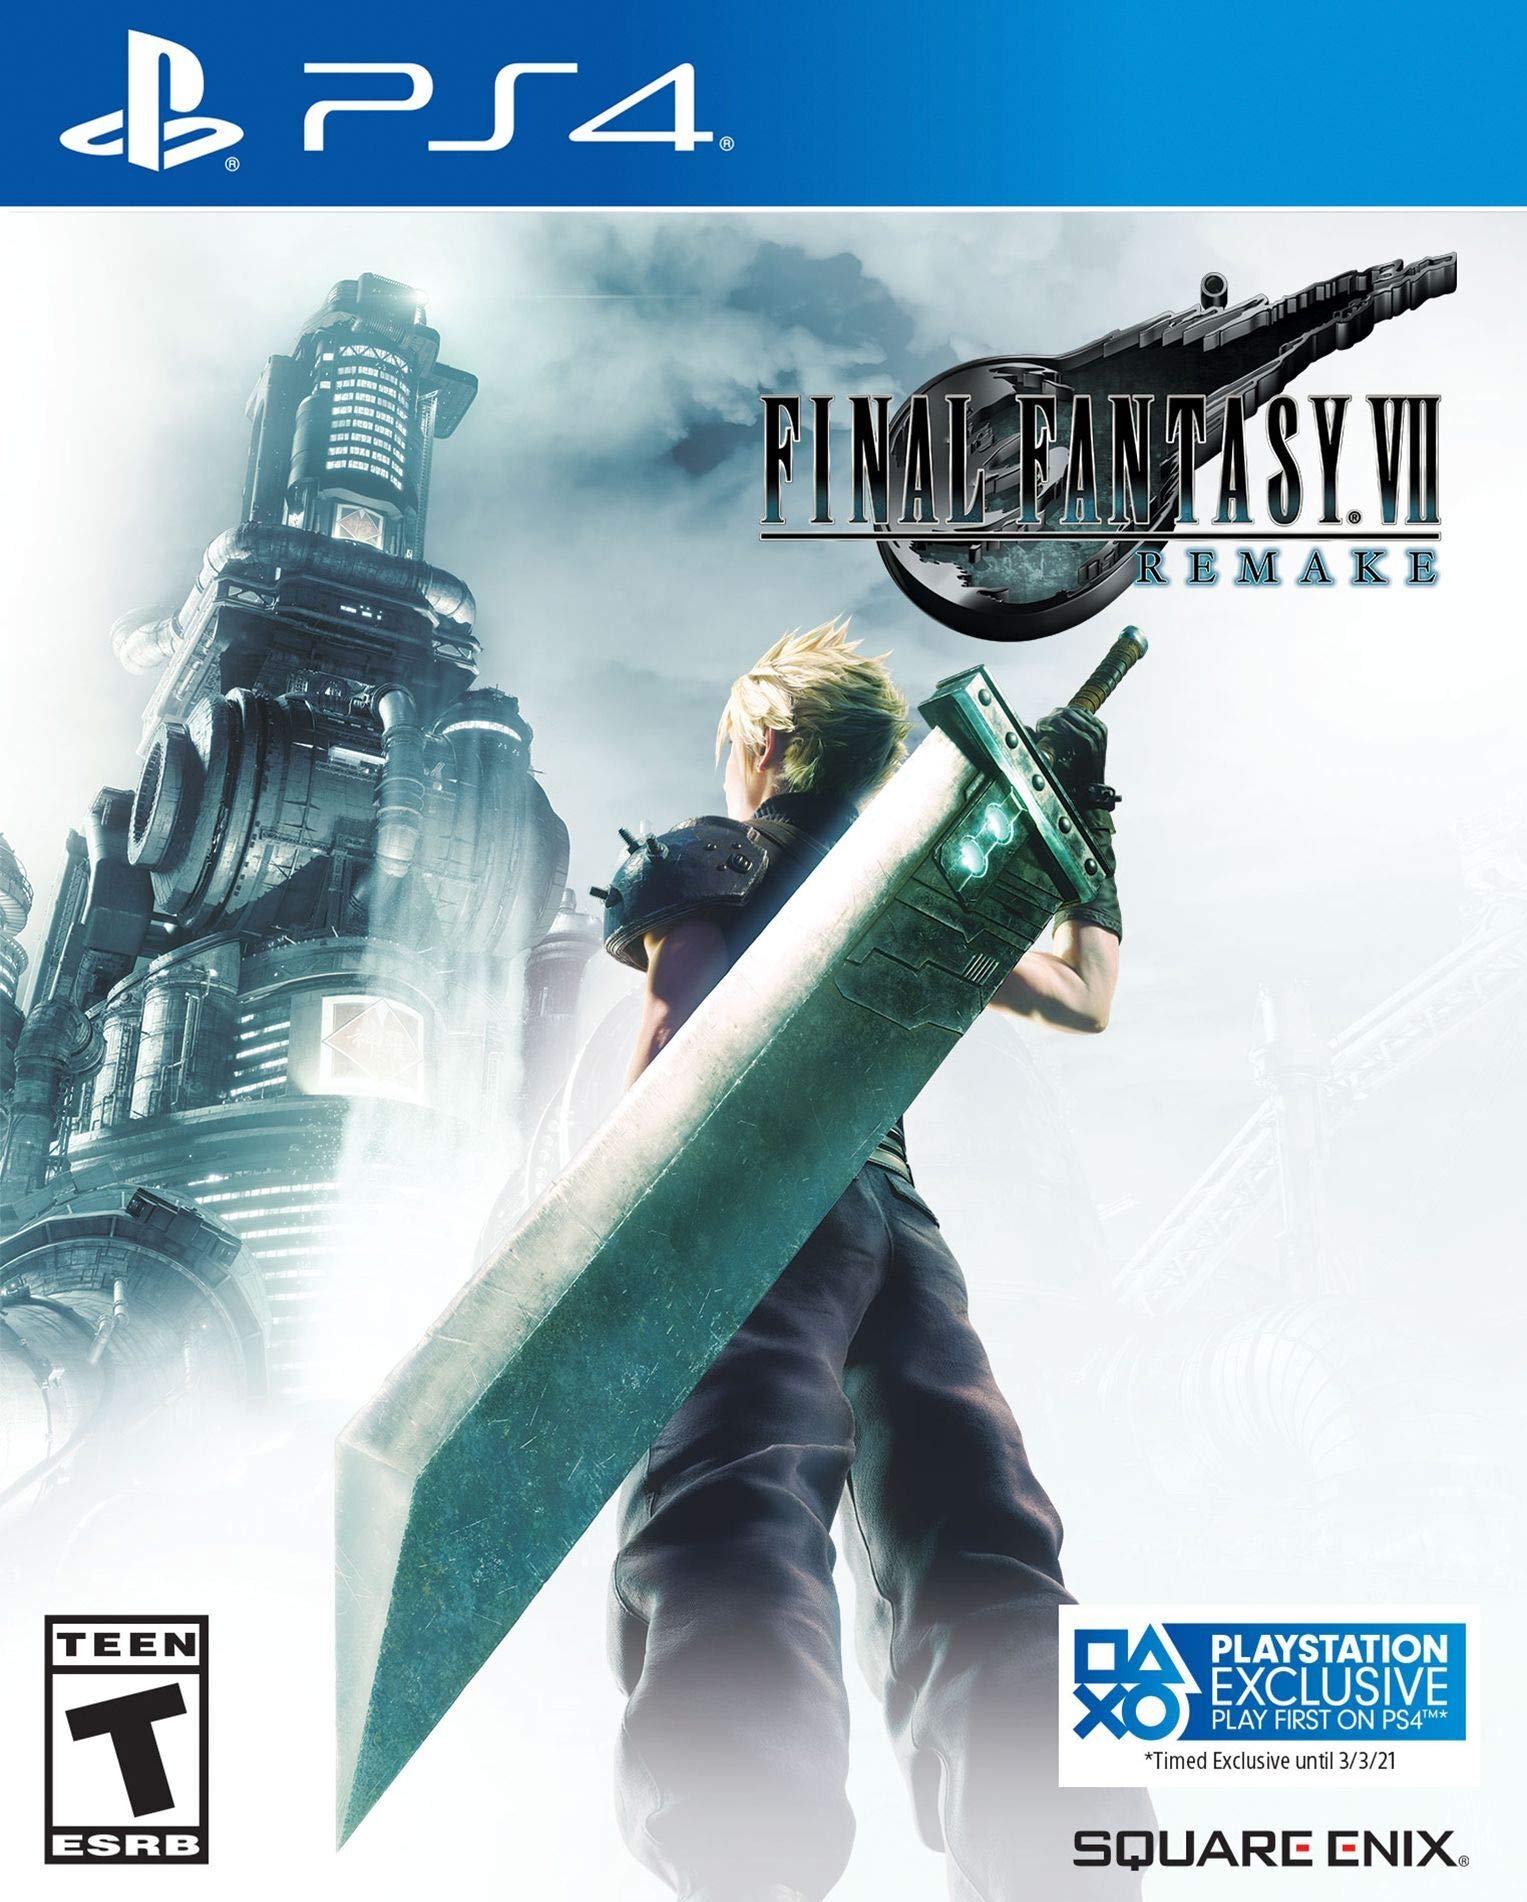 Final Fantasy VII - một trong những game RPG kinh điển được yêu thích nhất. Hãy xem hình ảnh liên quan để được chiêm ngưỡng đồ họa và câu chuyện đầy cảm xúc của trò chơi này.